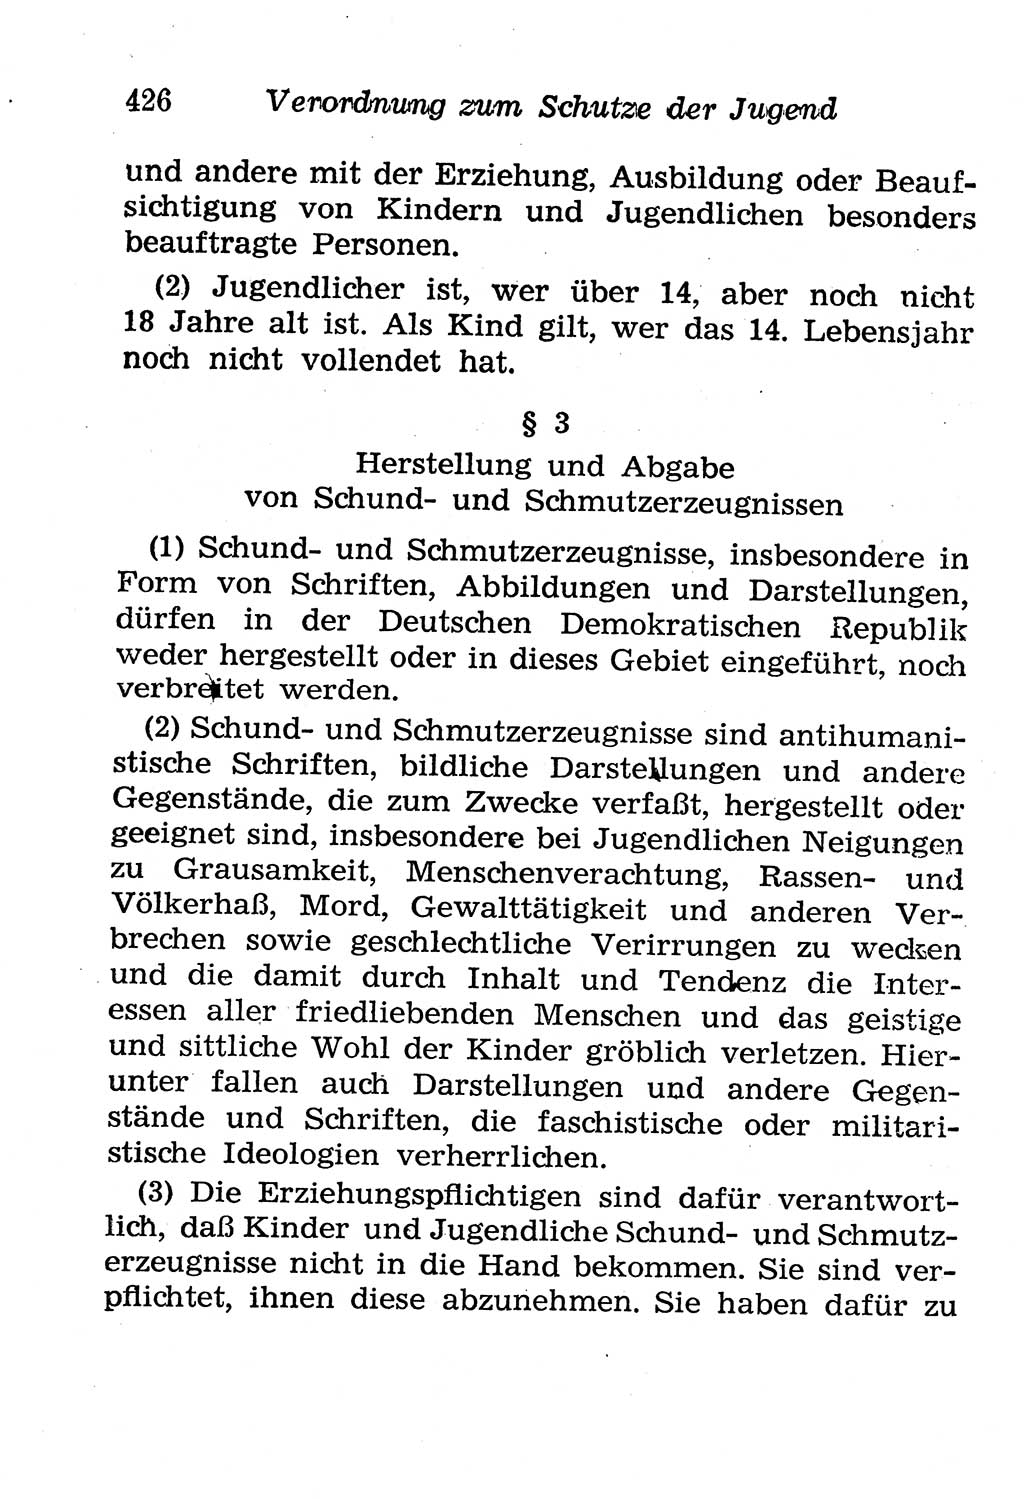 Strafgesetzbuch (StGB) und andere Strafgesetze [Deutsche Demokratische Republik (DDR)] 1958, Seite 426 (StGB Strafges. DDR 1958, S. 426)